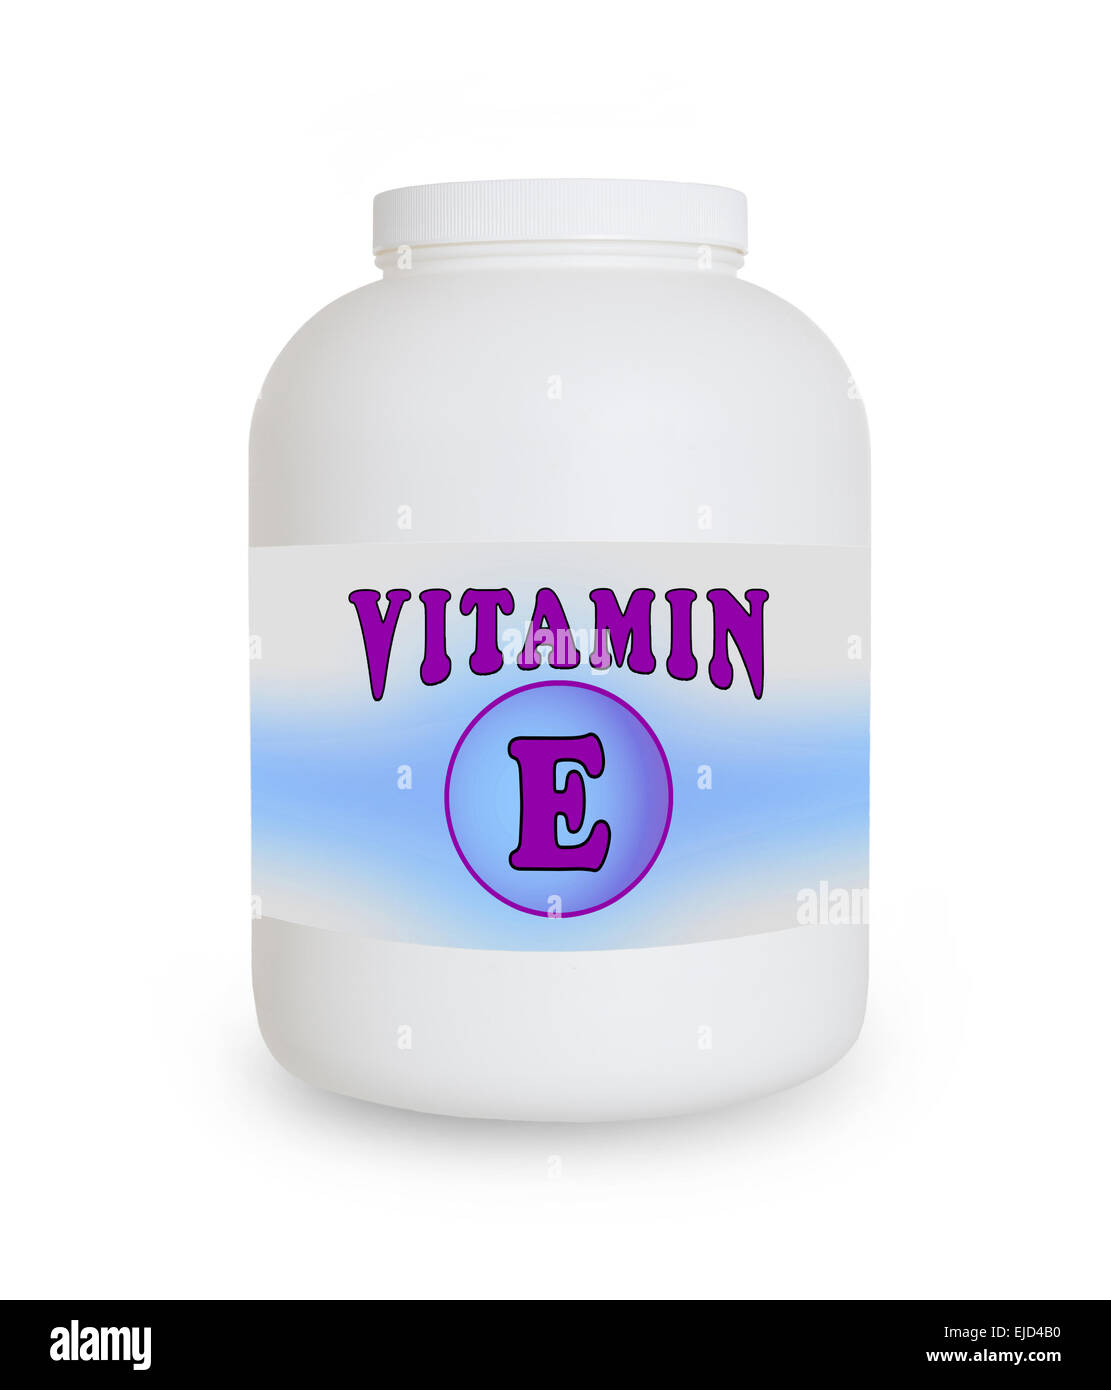 La vitamine E, conteneur isolé sur fond blanc Banque D'Images